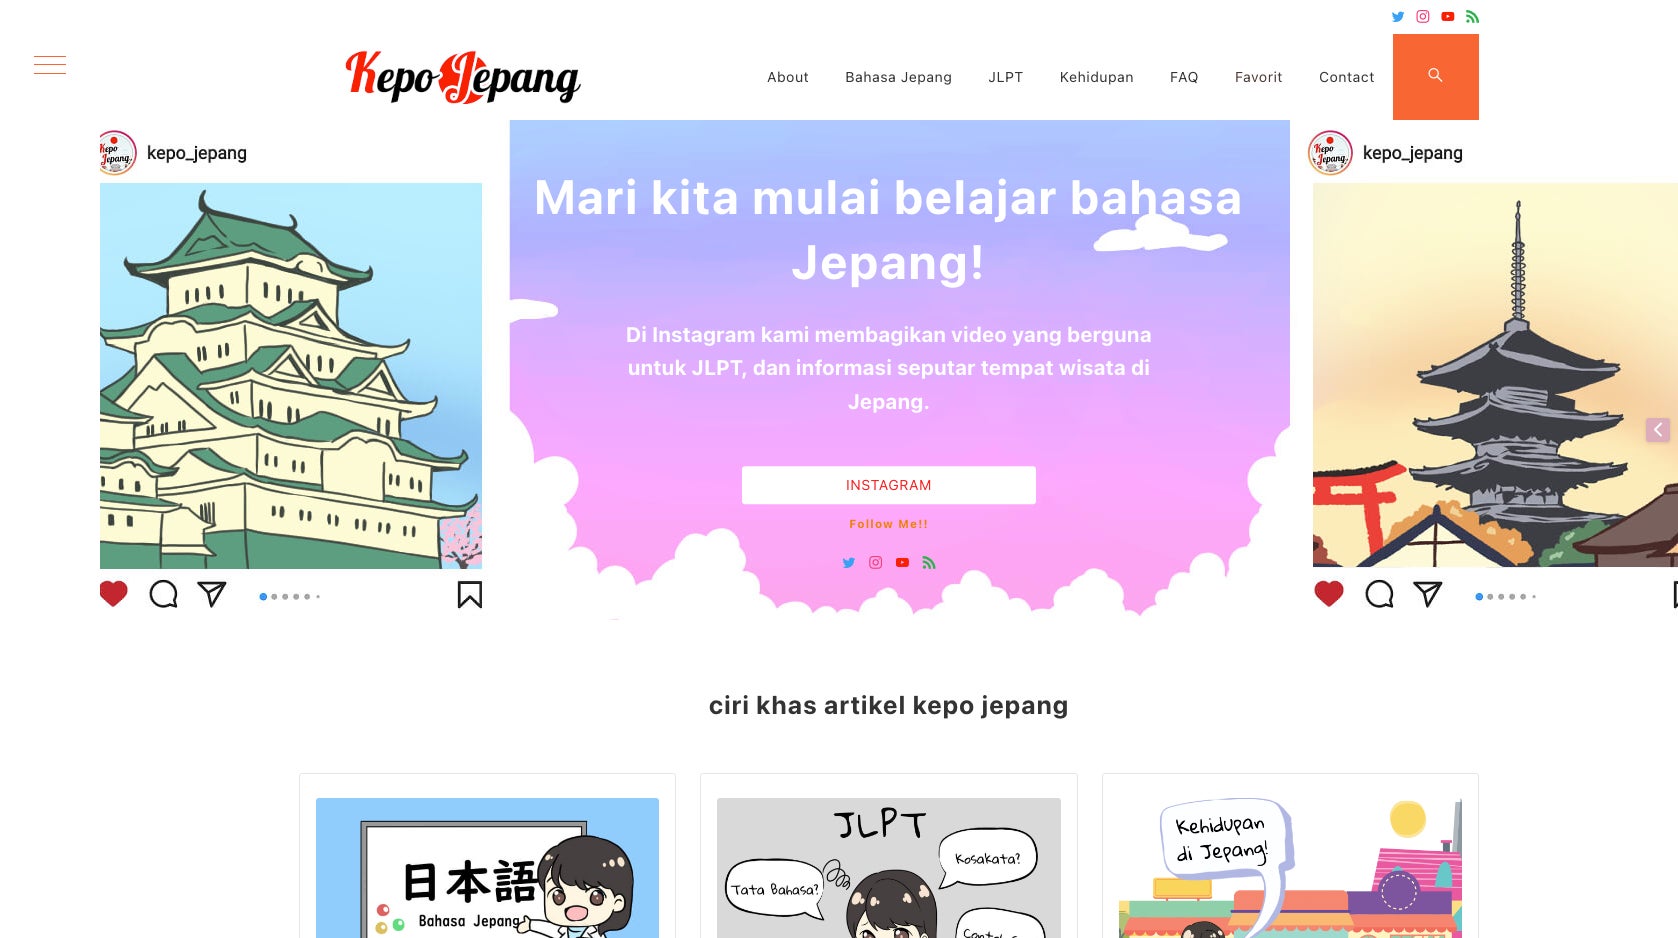 インドネシア人に向けて日本語学習を発信するWebメディア「Kepo Jepang」のユーザー数が10万人を突破